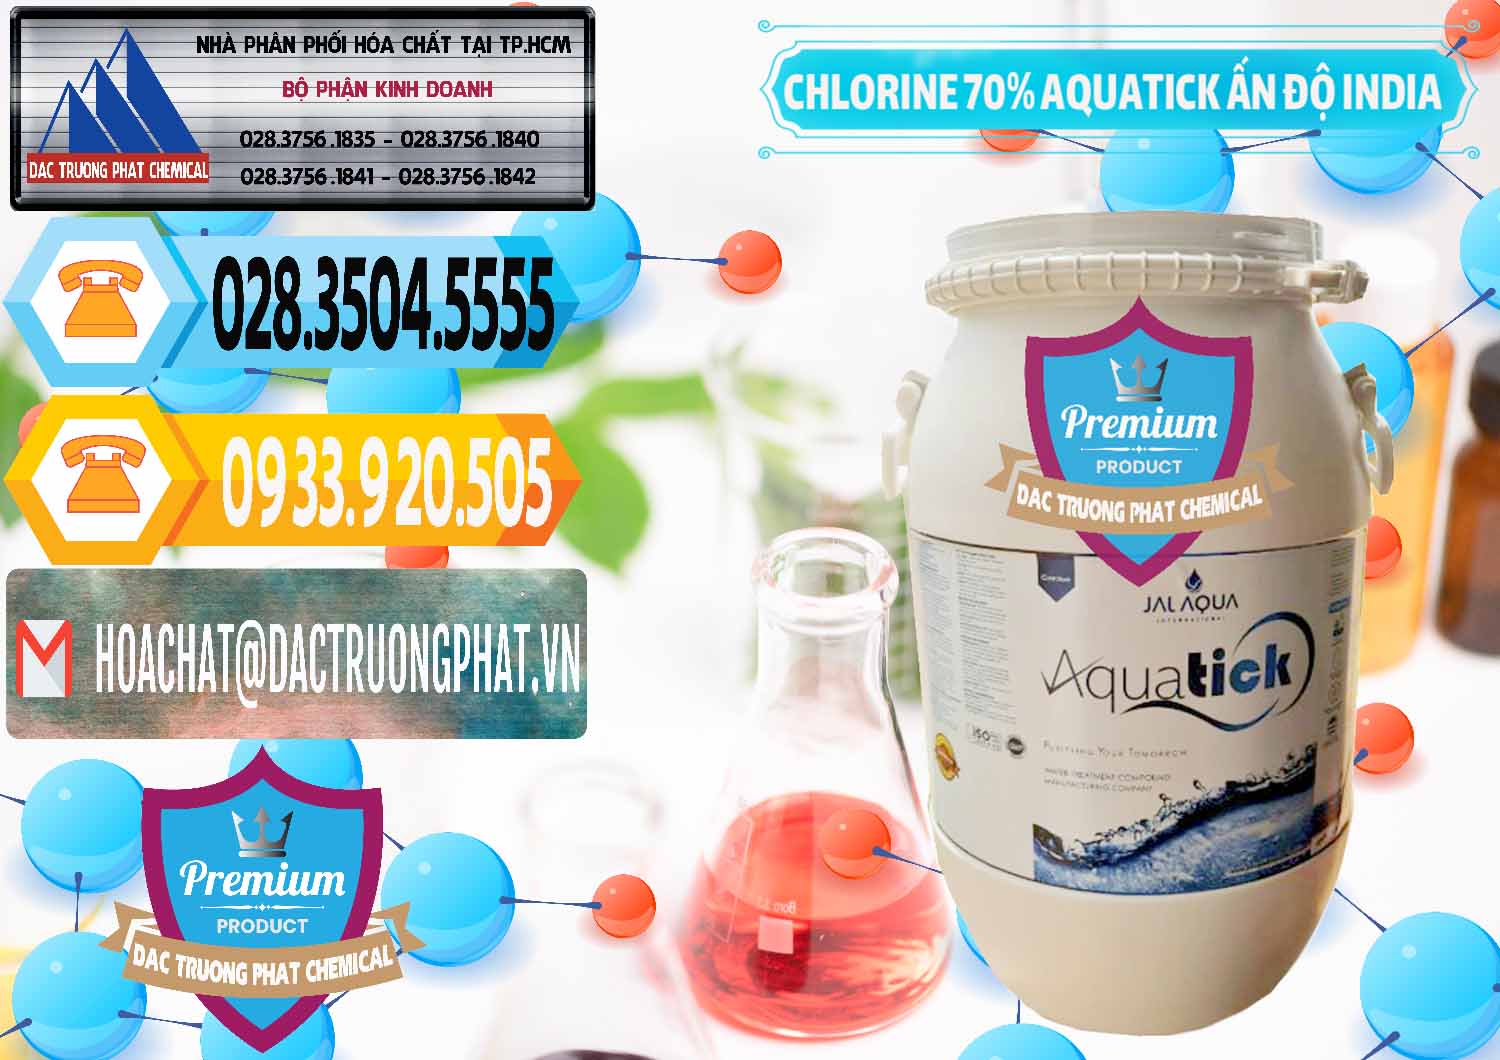 Đơn vị bán và cung ứng Chlorine – Clorin 70% Aquatick Jal Aqua Ấn Độ India - 0215 - Cty cung cấp _ bán hóa chất tại TP.HCM - hoachattayrua.net